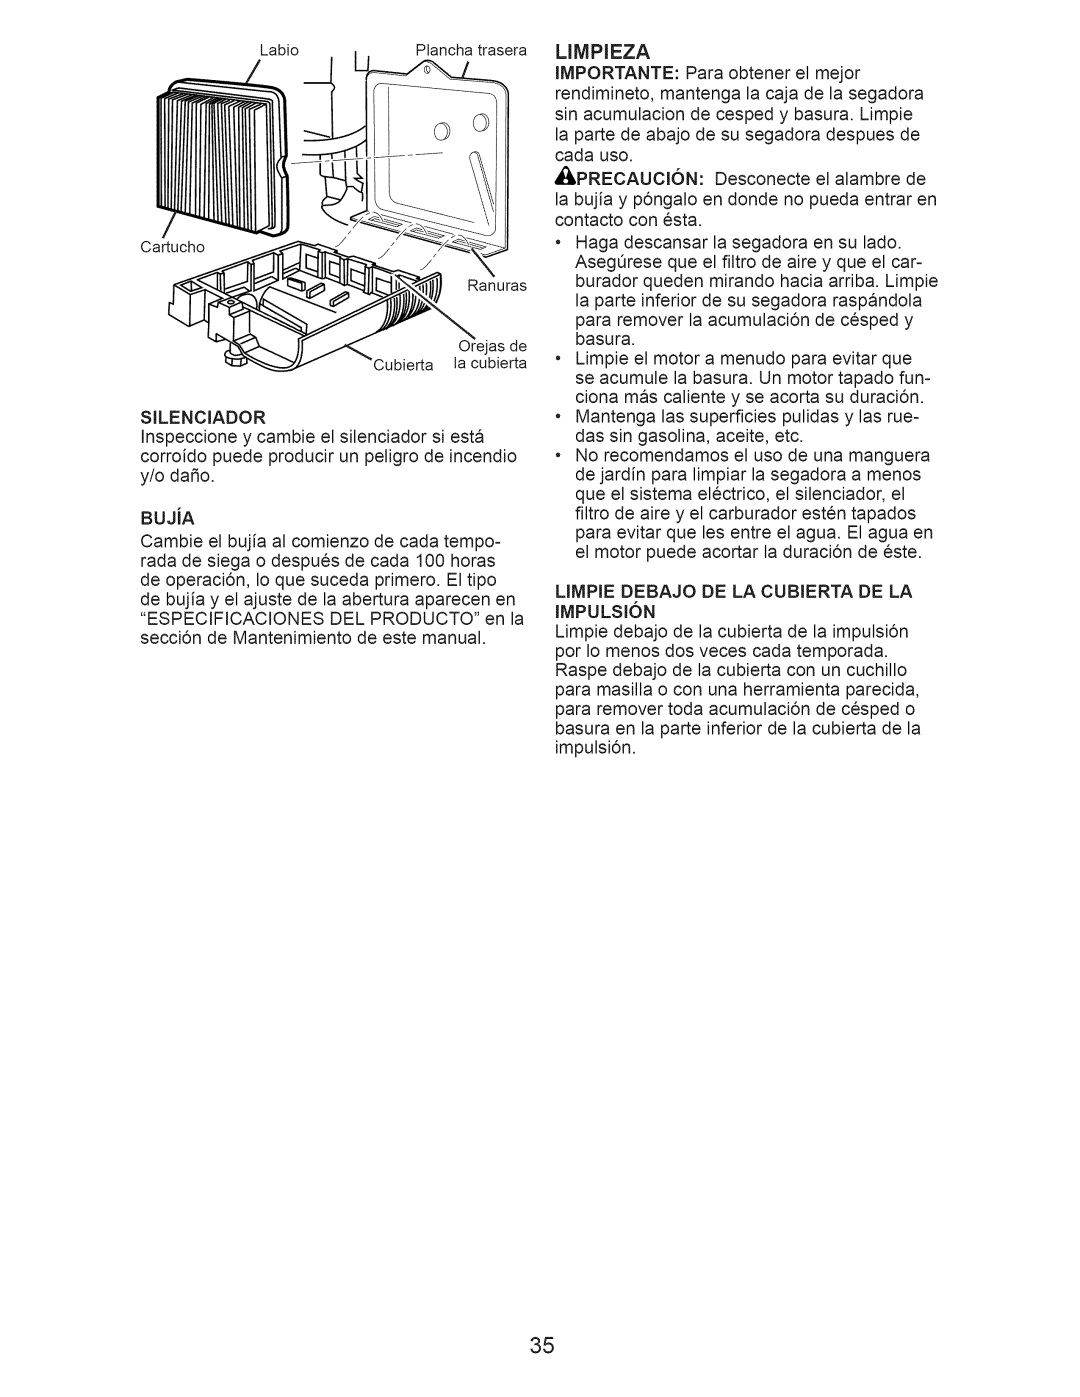 Craftsman 917.376536 manual Limpieza, LIMPIE DEBAJO DE LA CUBIERTA DE LA IMPULSI6N 